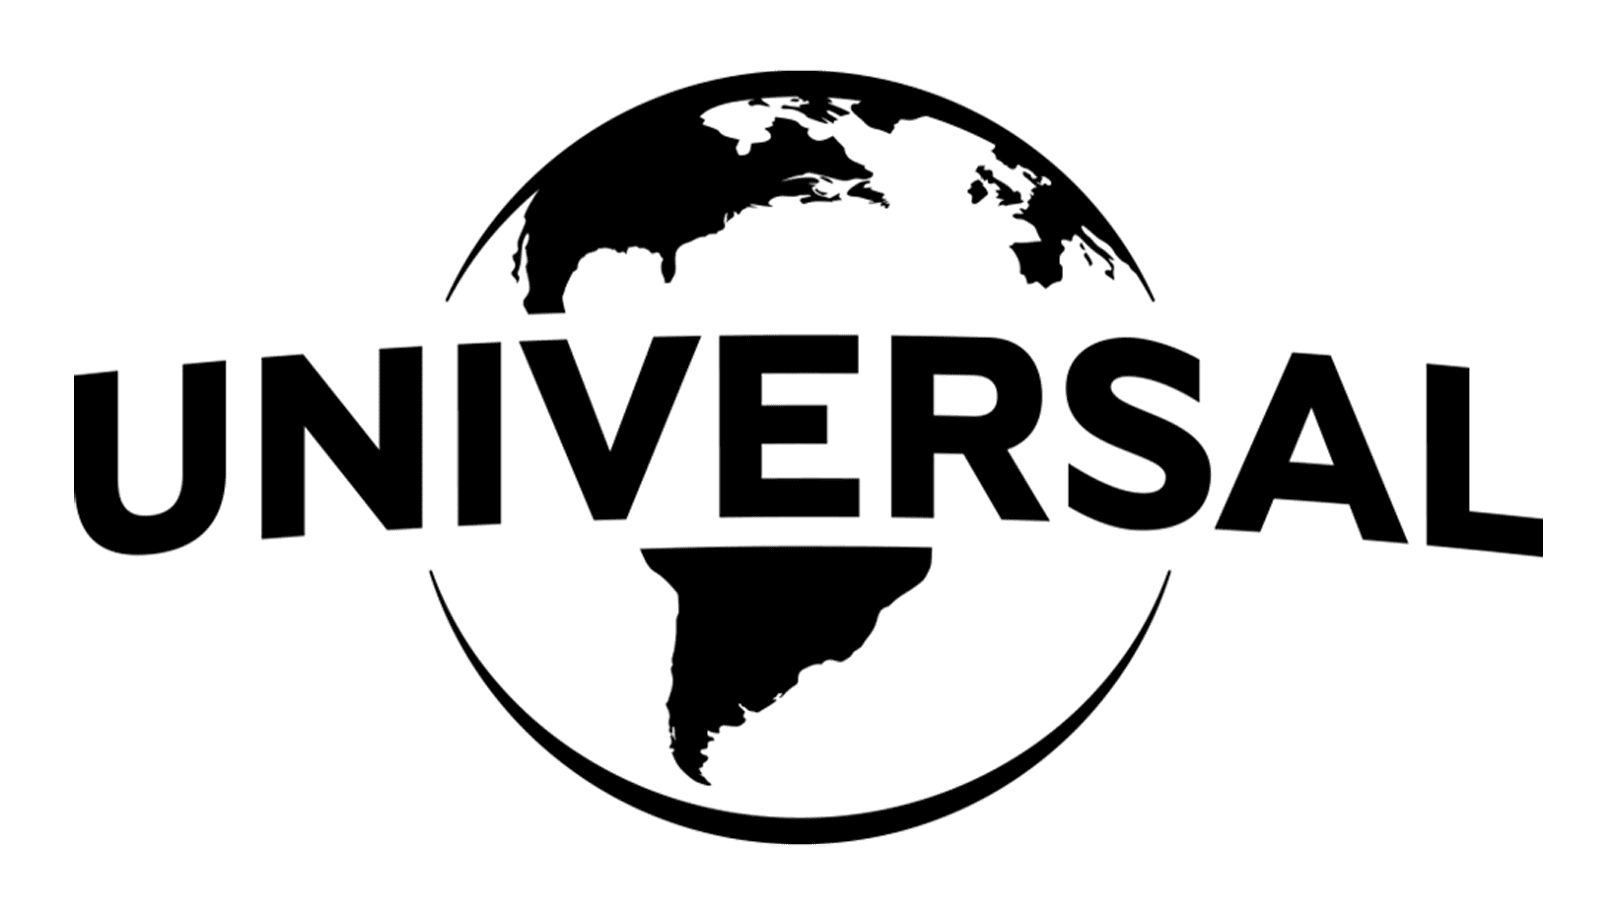 universal logo png